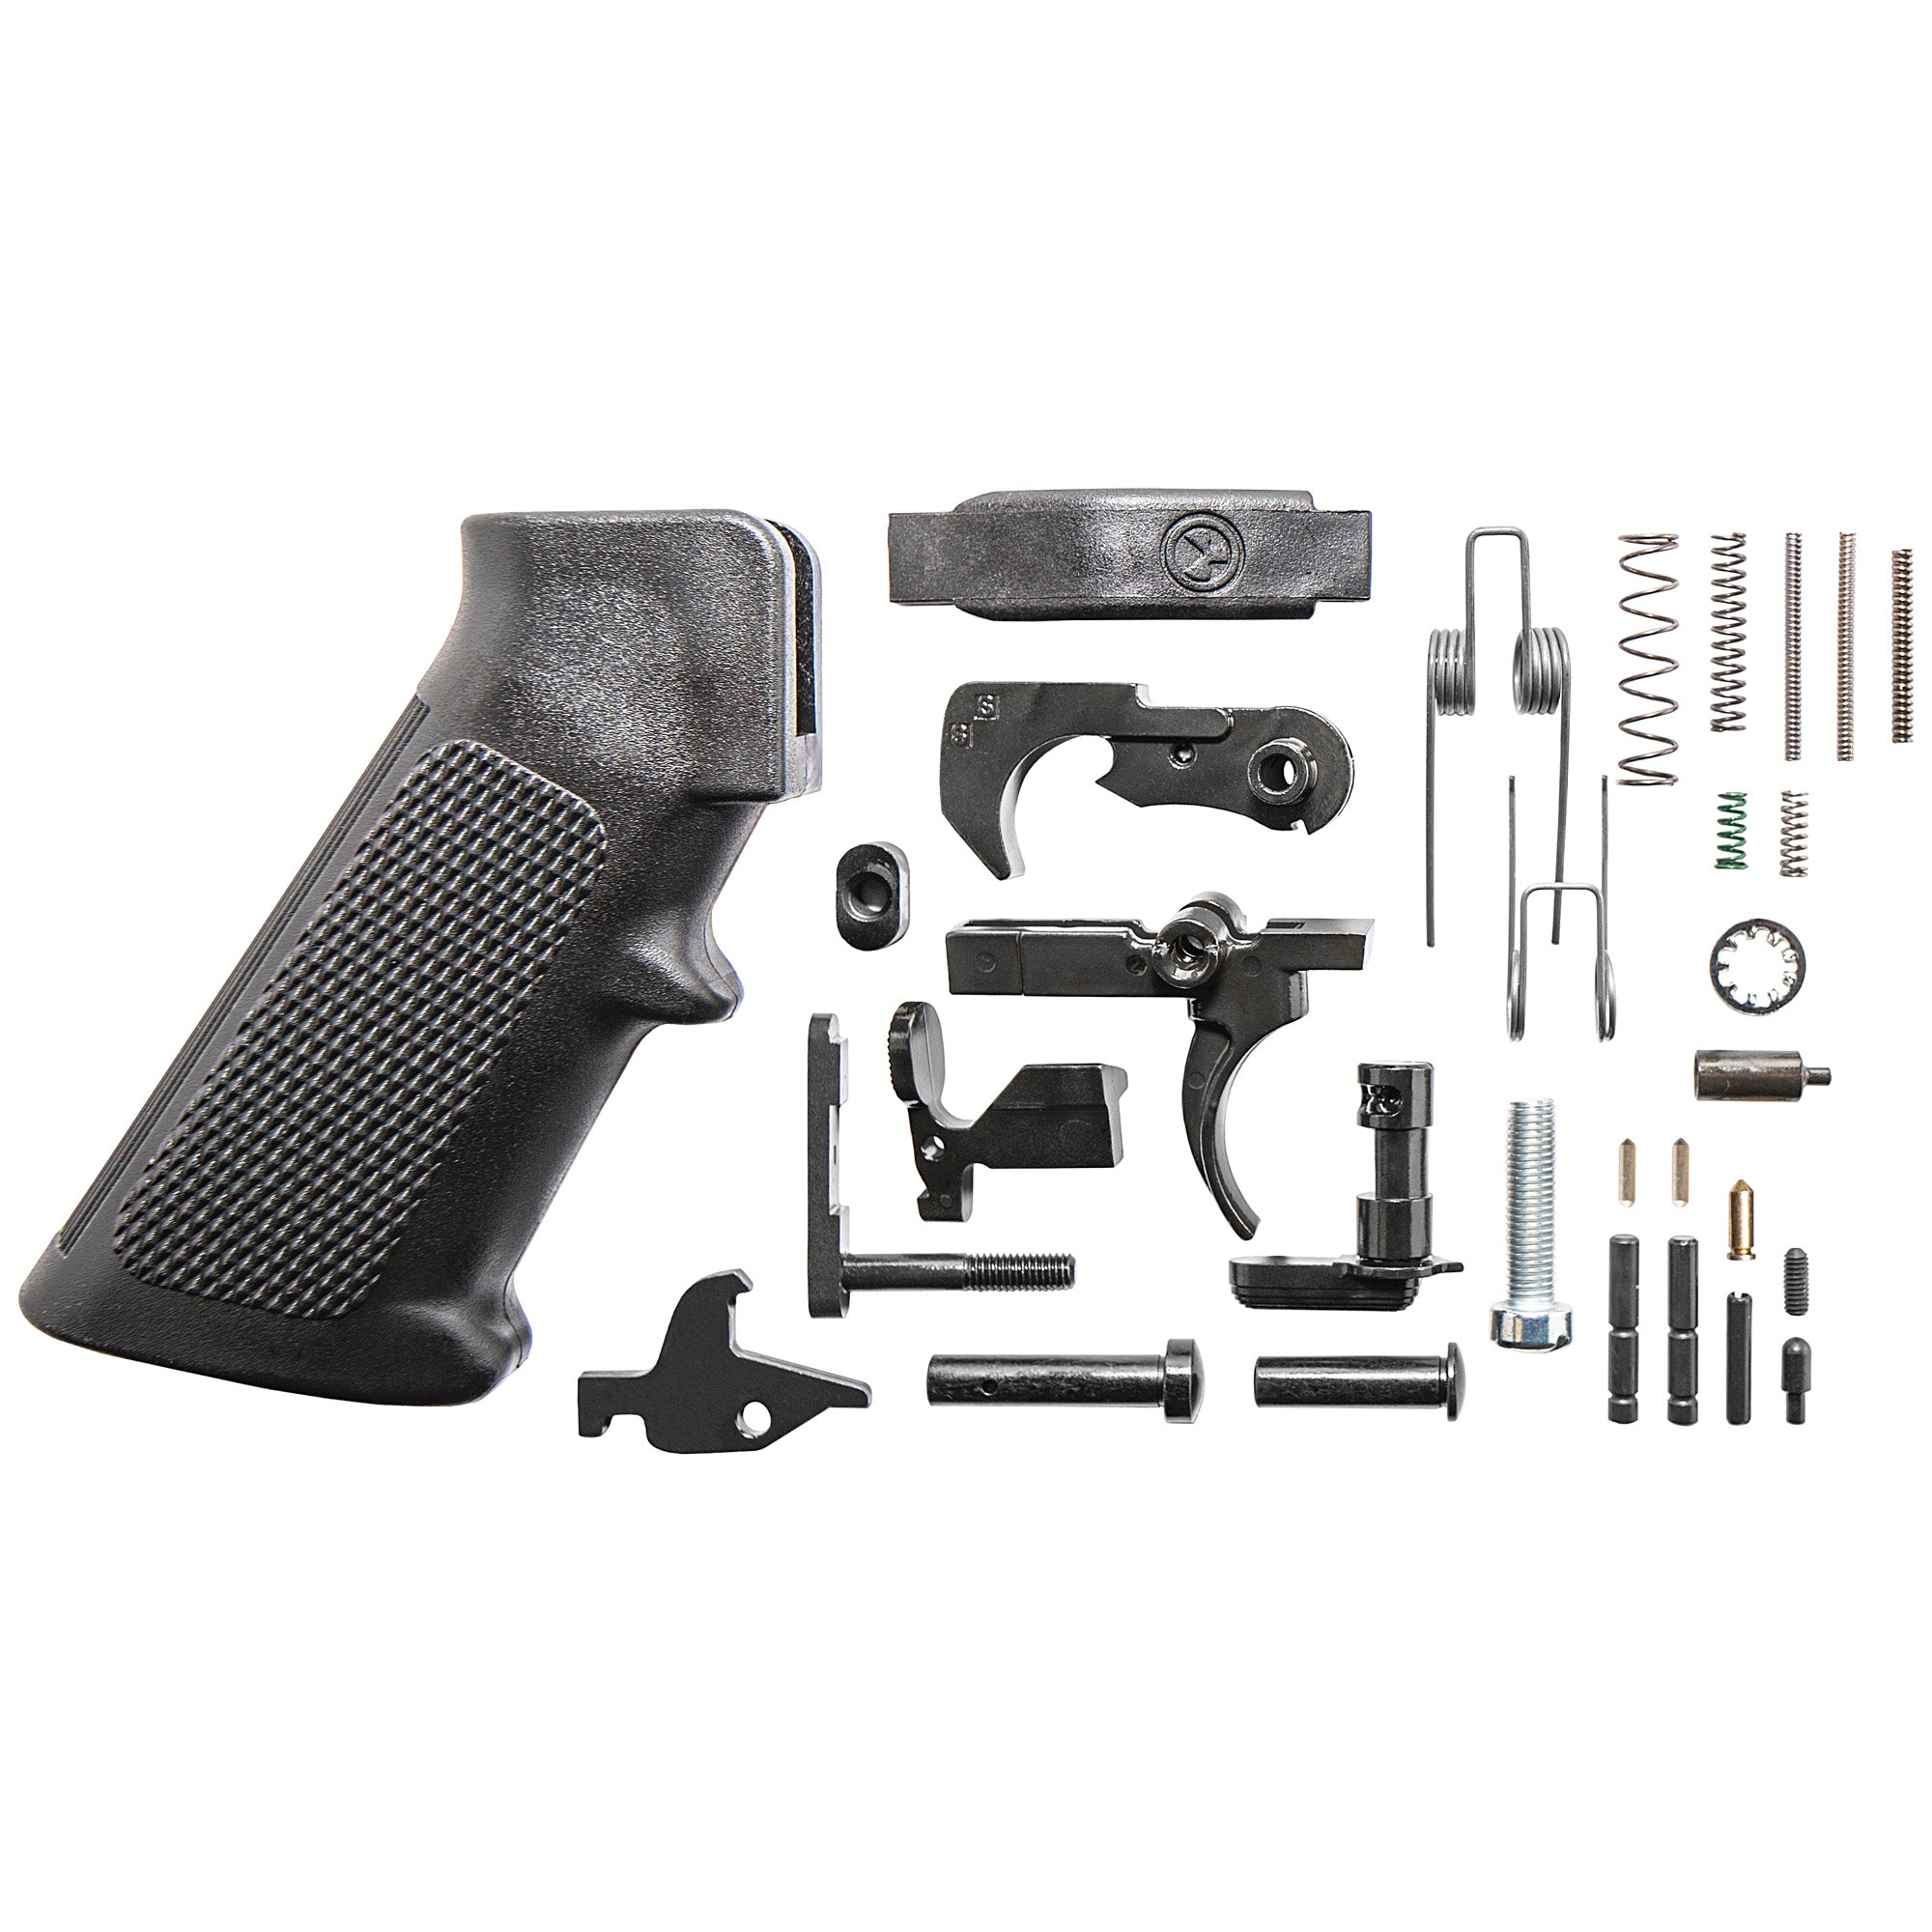 Daniel Defense Complete Lower Receiver Parts Kit for AR-15 in black, designed for 223 Rem/556NATO rifles.